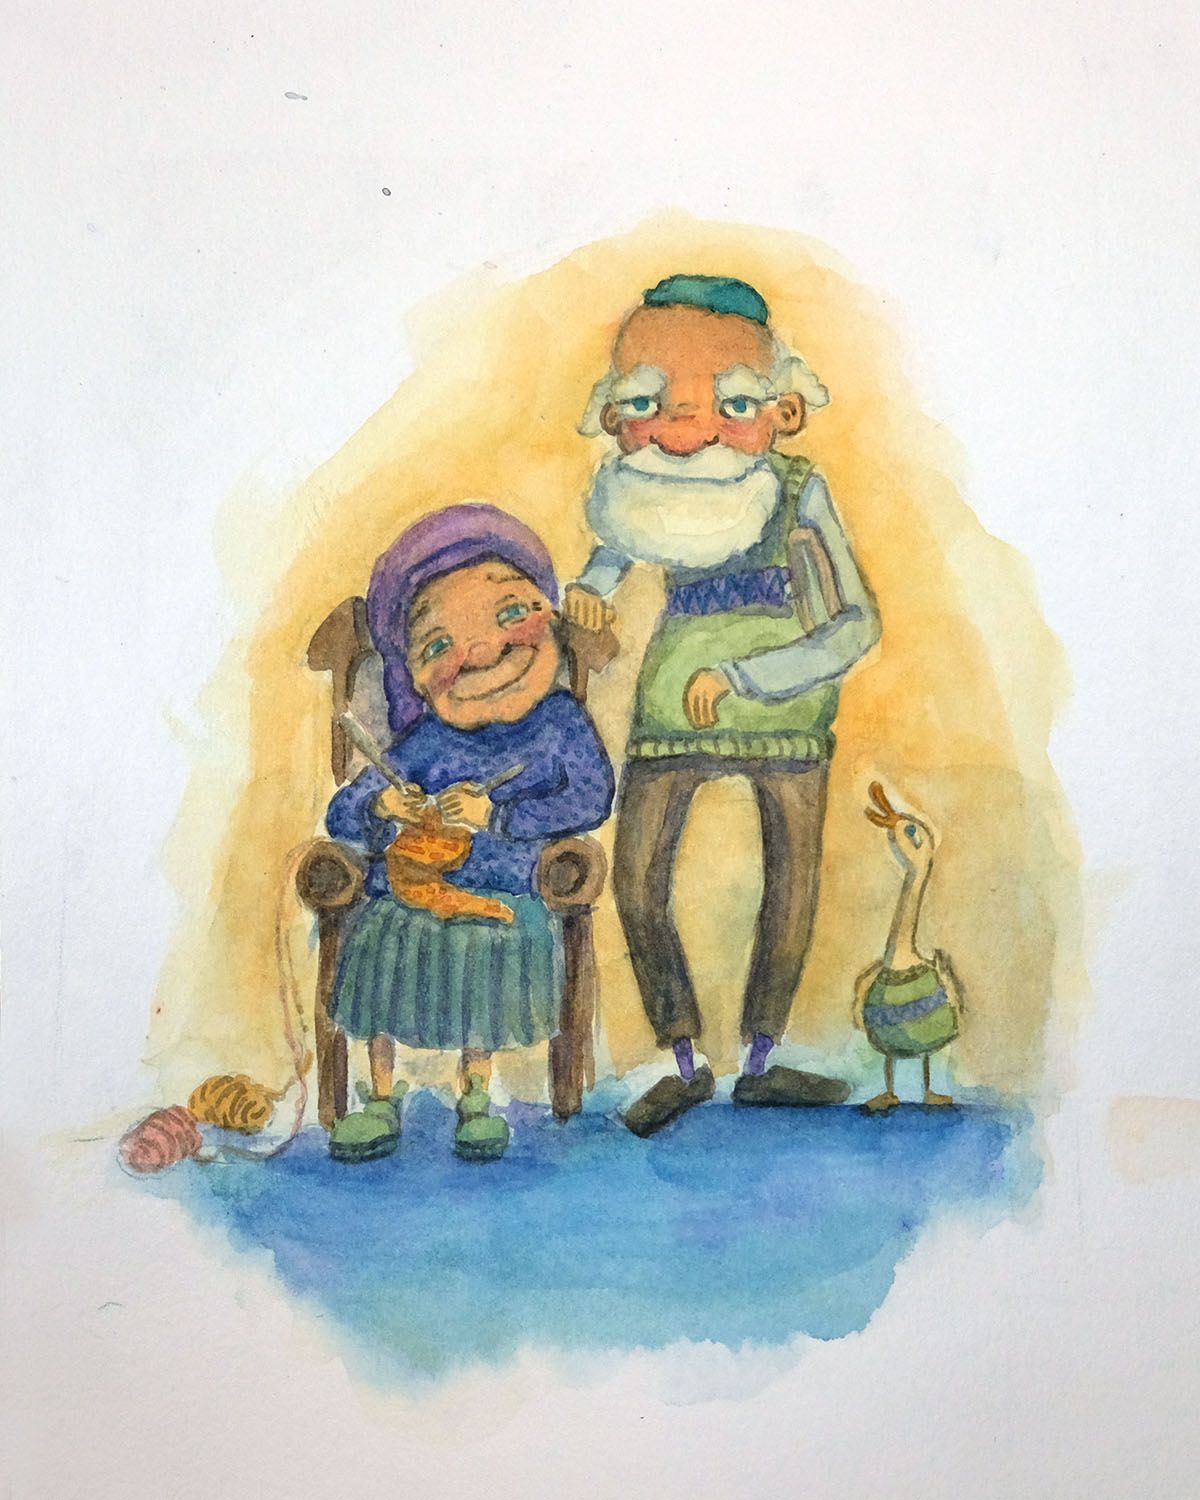 איור דמויות בצבעי מים - סבתא אלישבע וסבא אביגדור